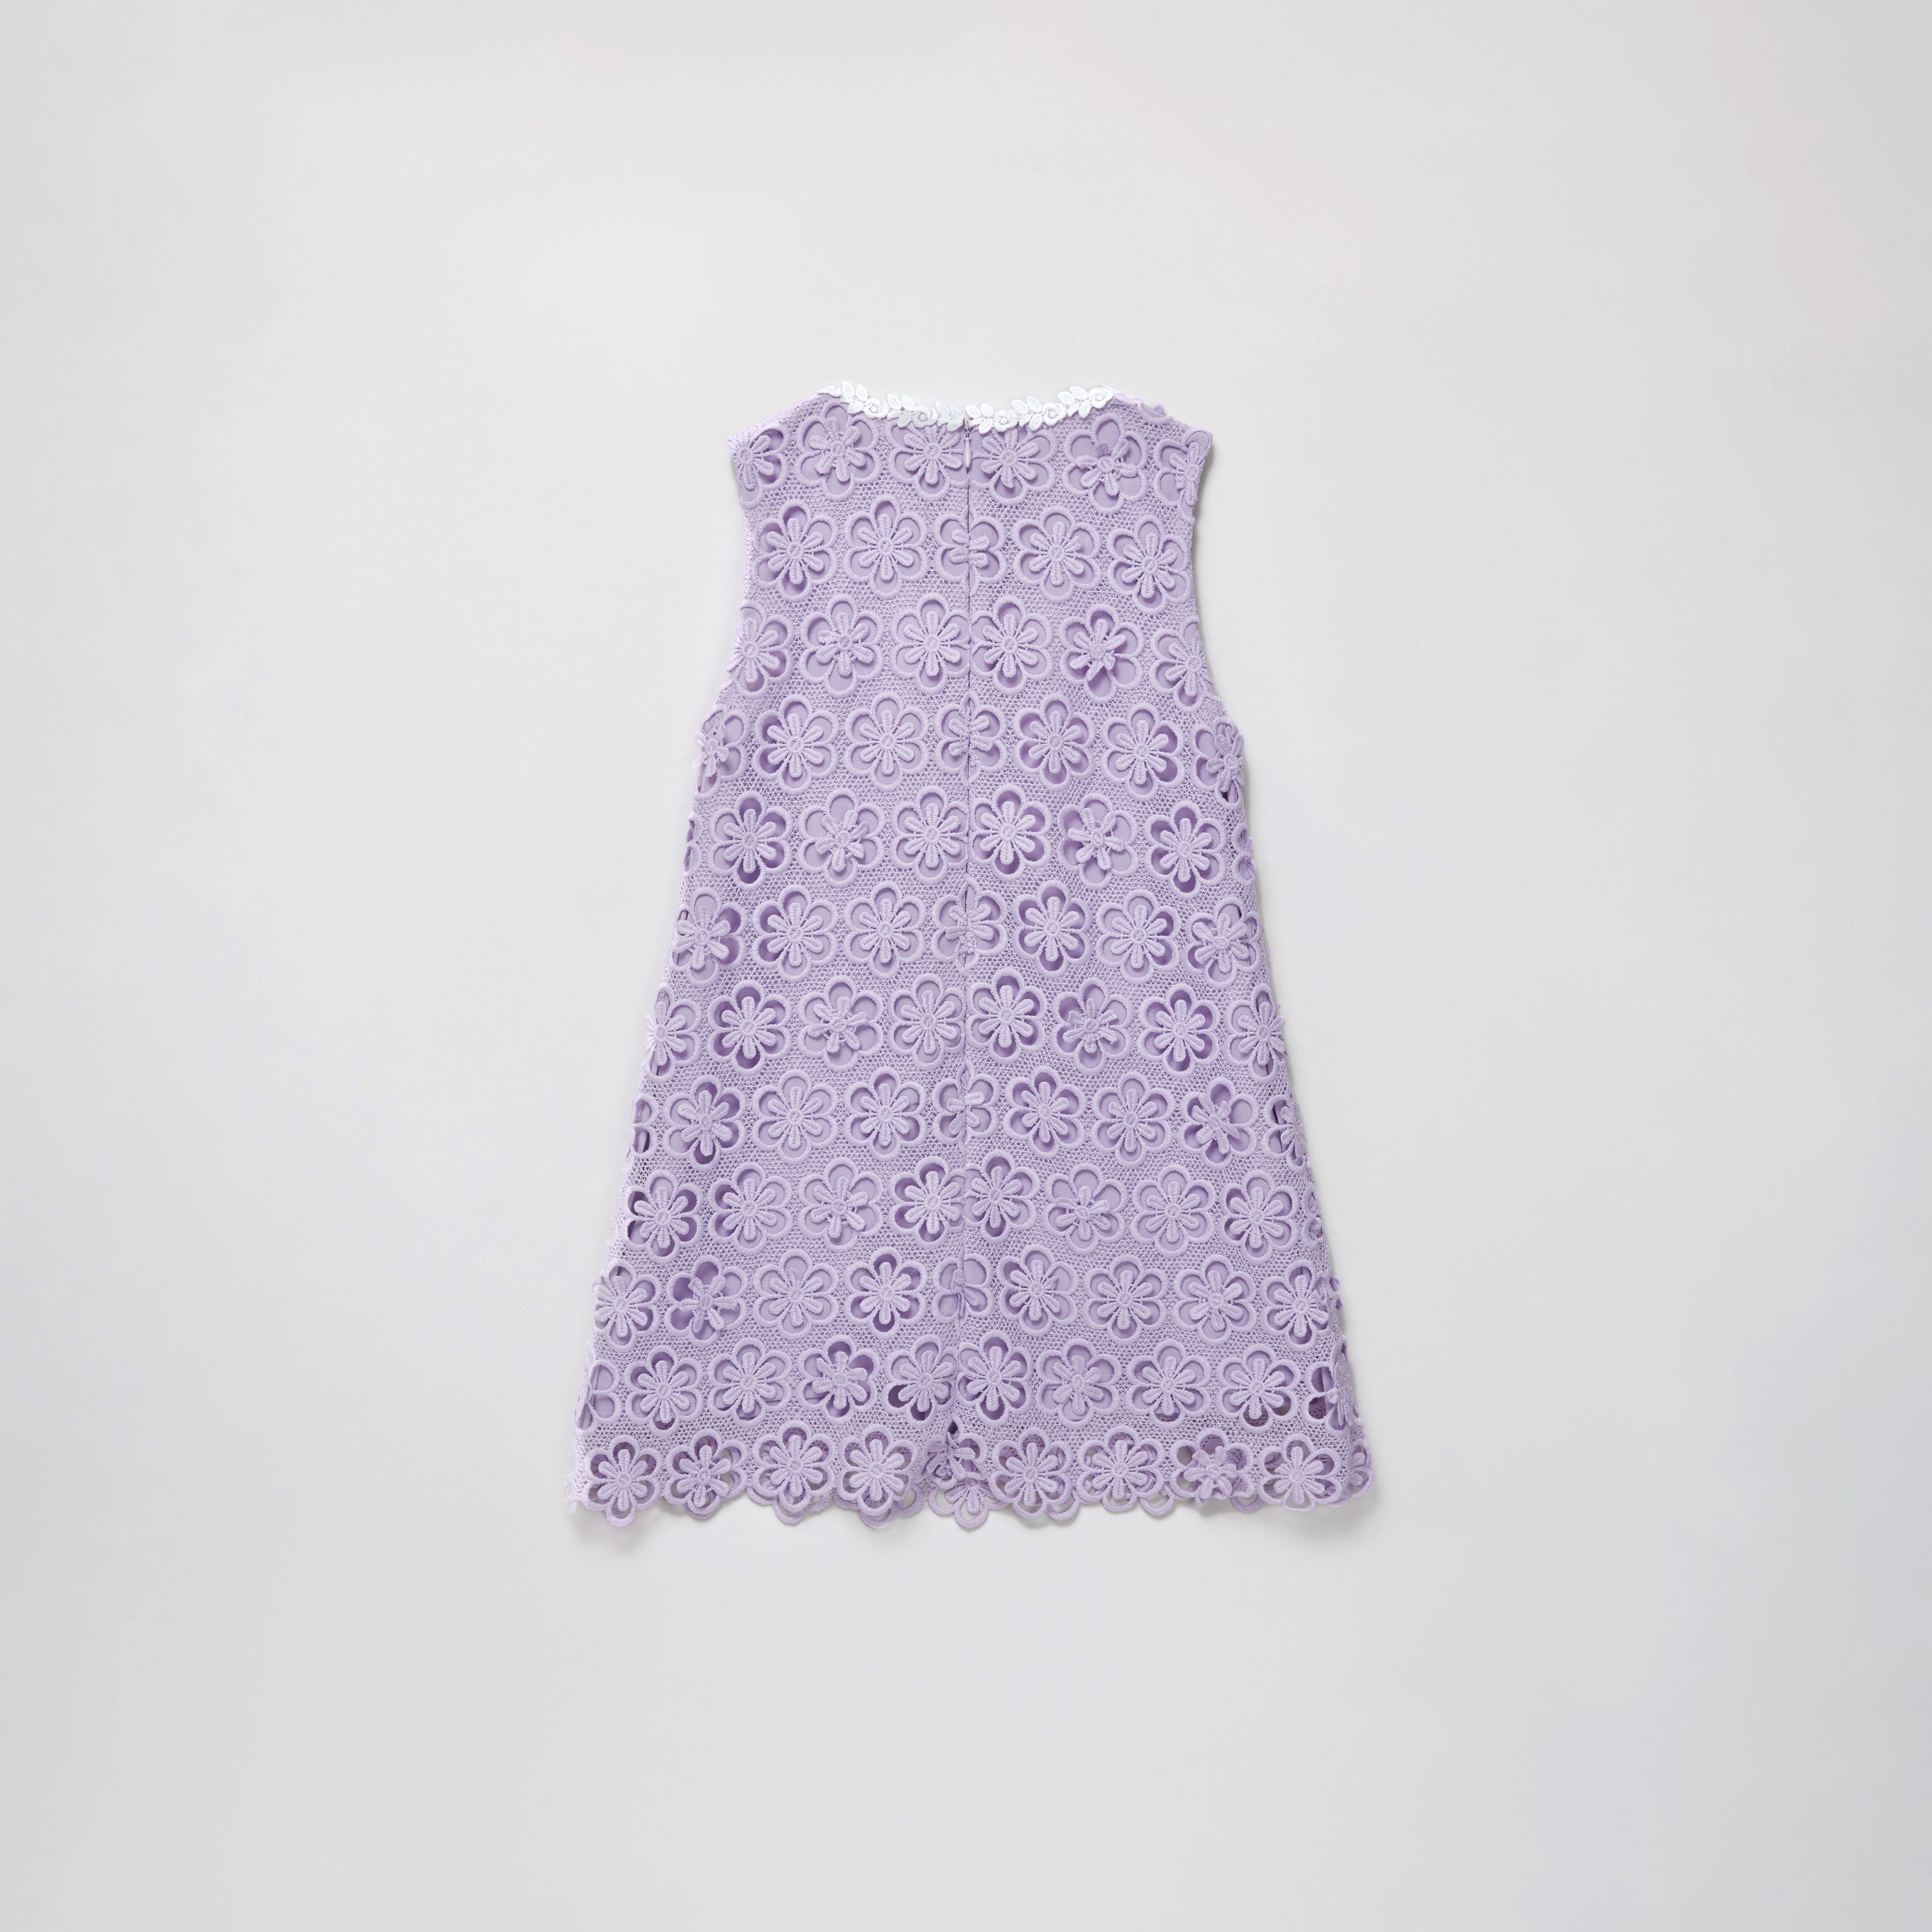 Lilac Floral Lace Dress